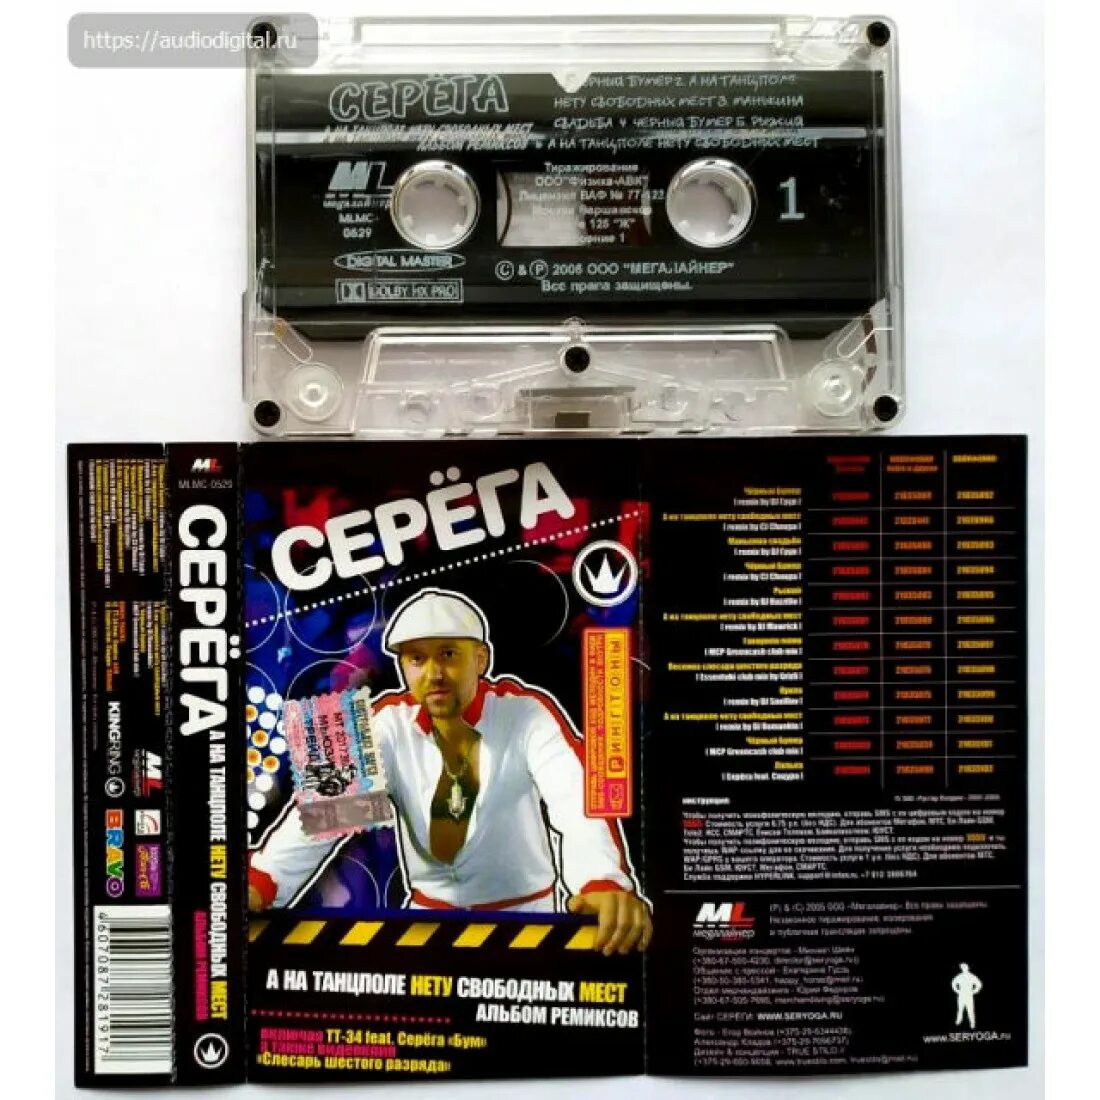 Мс место. Серёга а на танцполе нету свободных мест. Seryoga аудиокассеты. Аудиокассета Серега черный бумер ,2004. Альбом ремиксов.